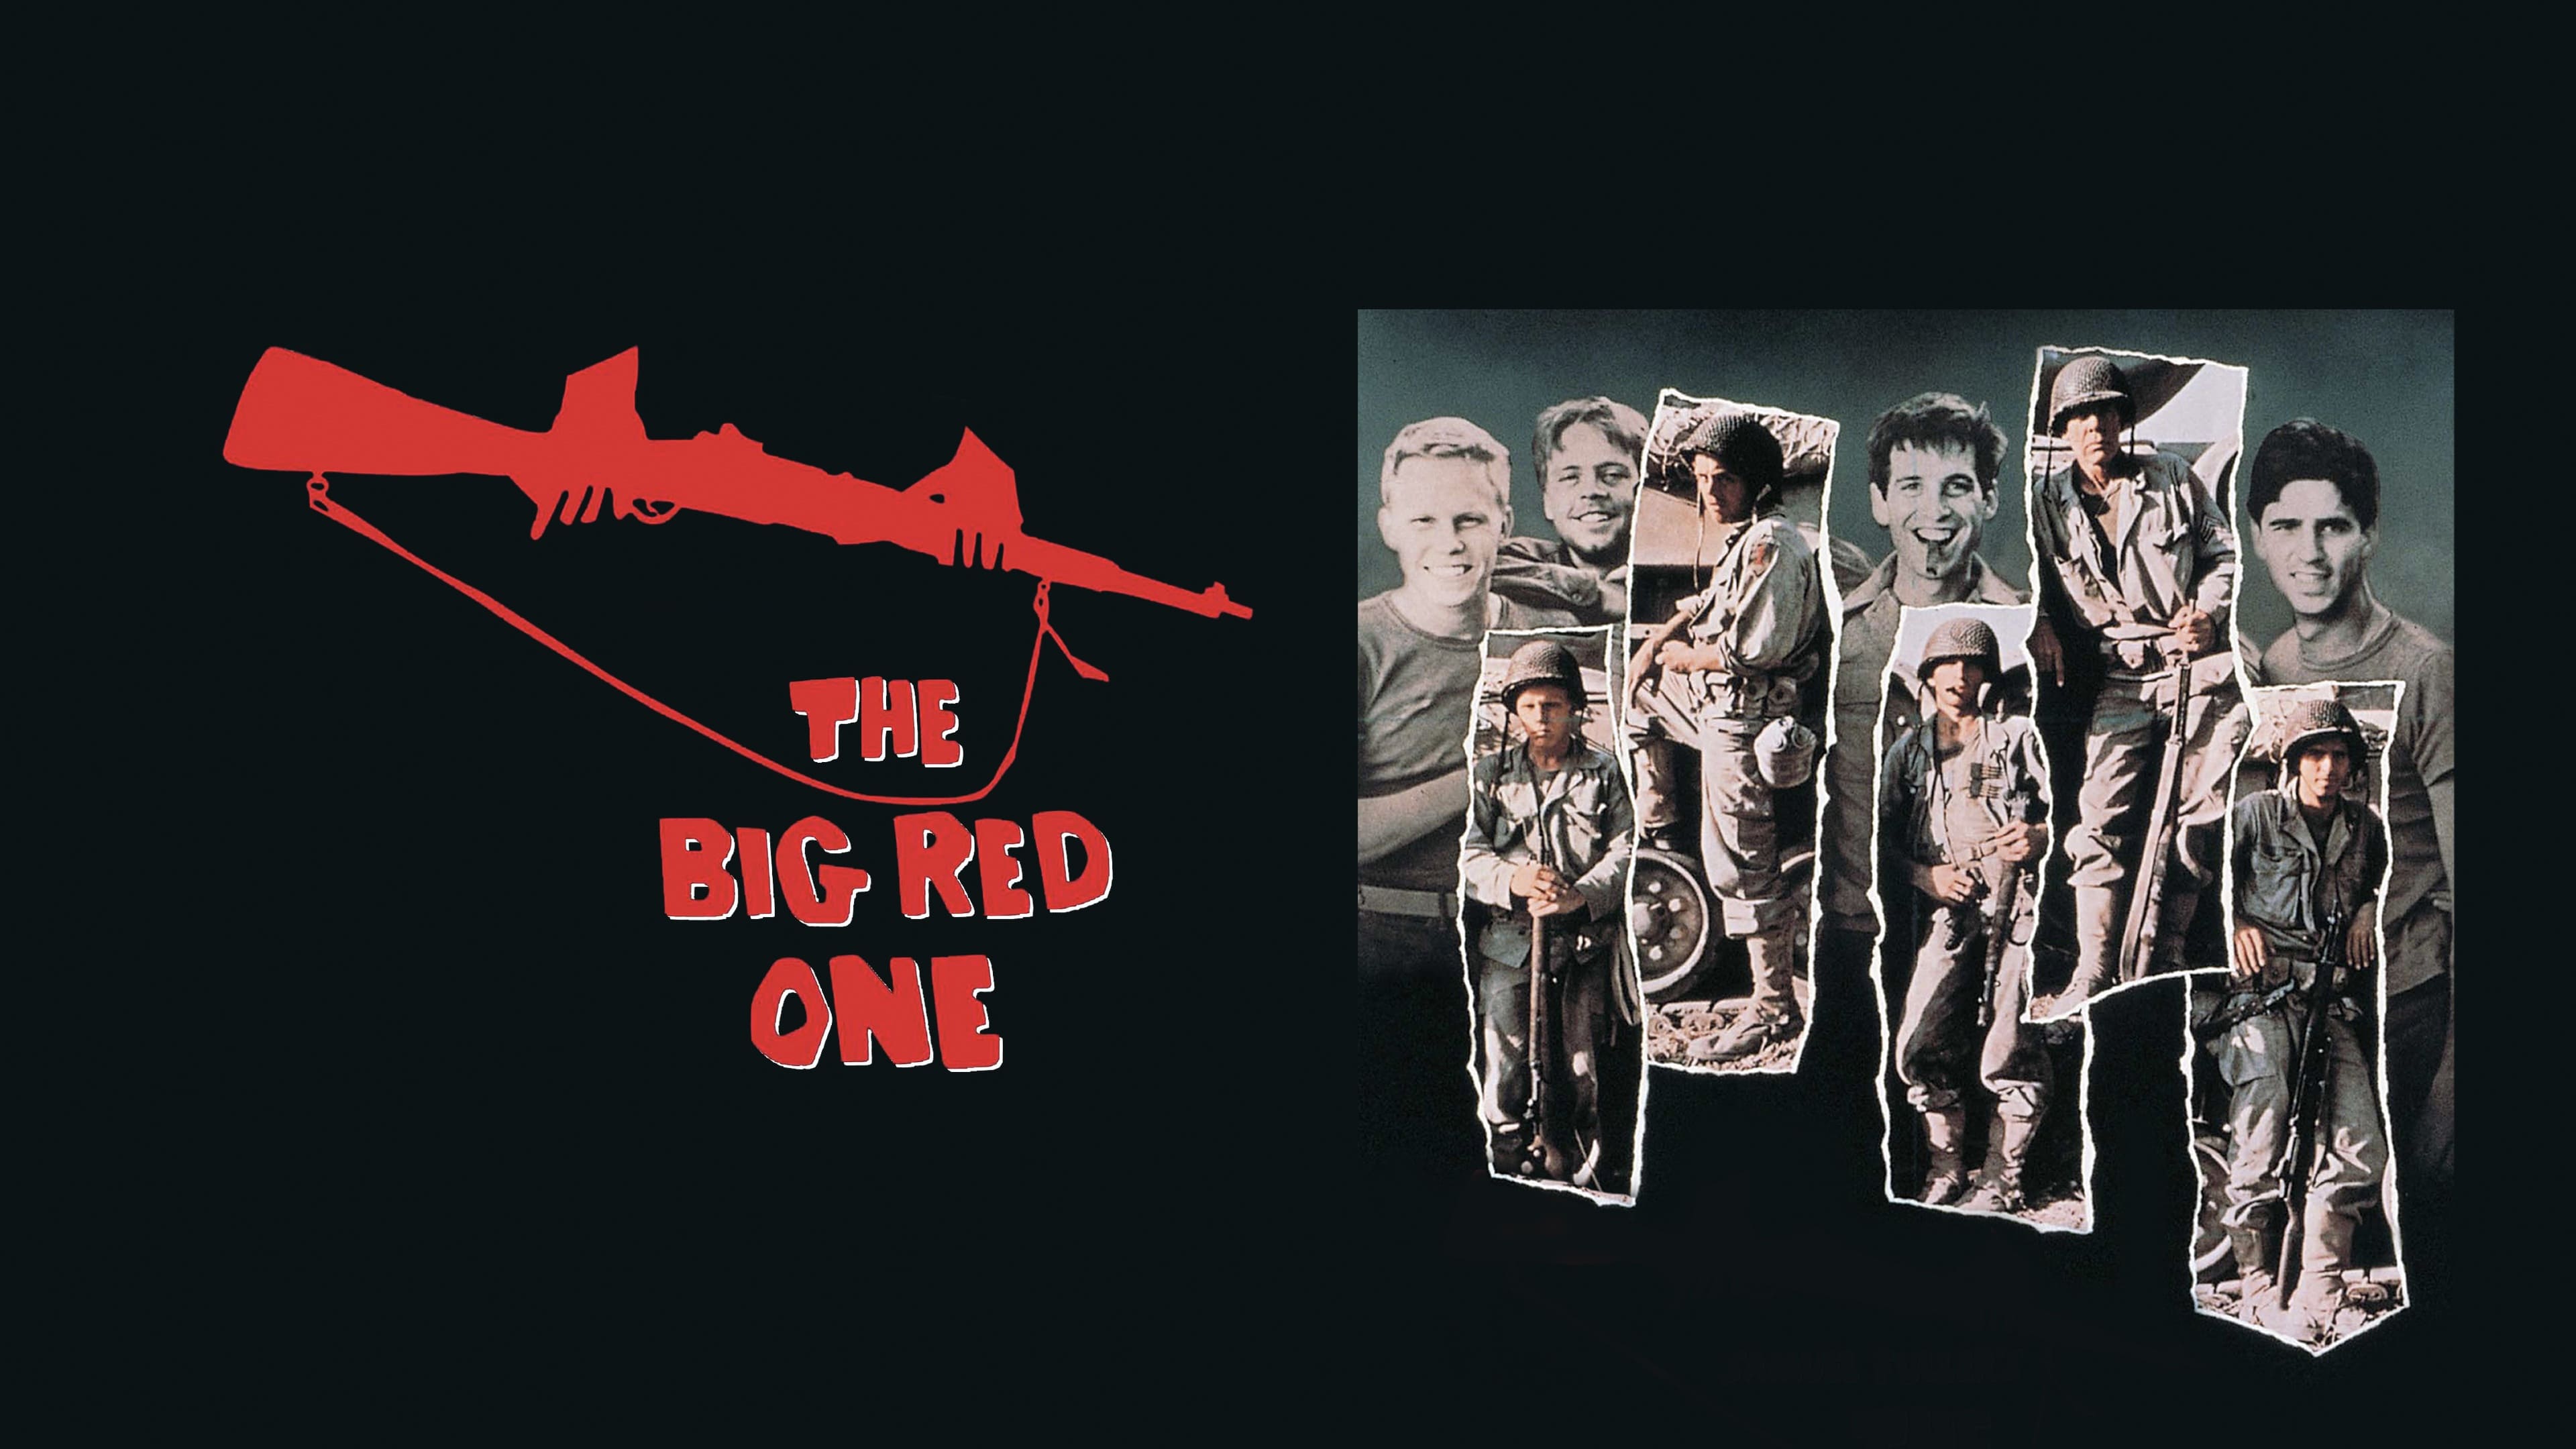 Il grande uno rosso (1980)